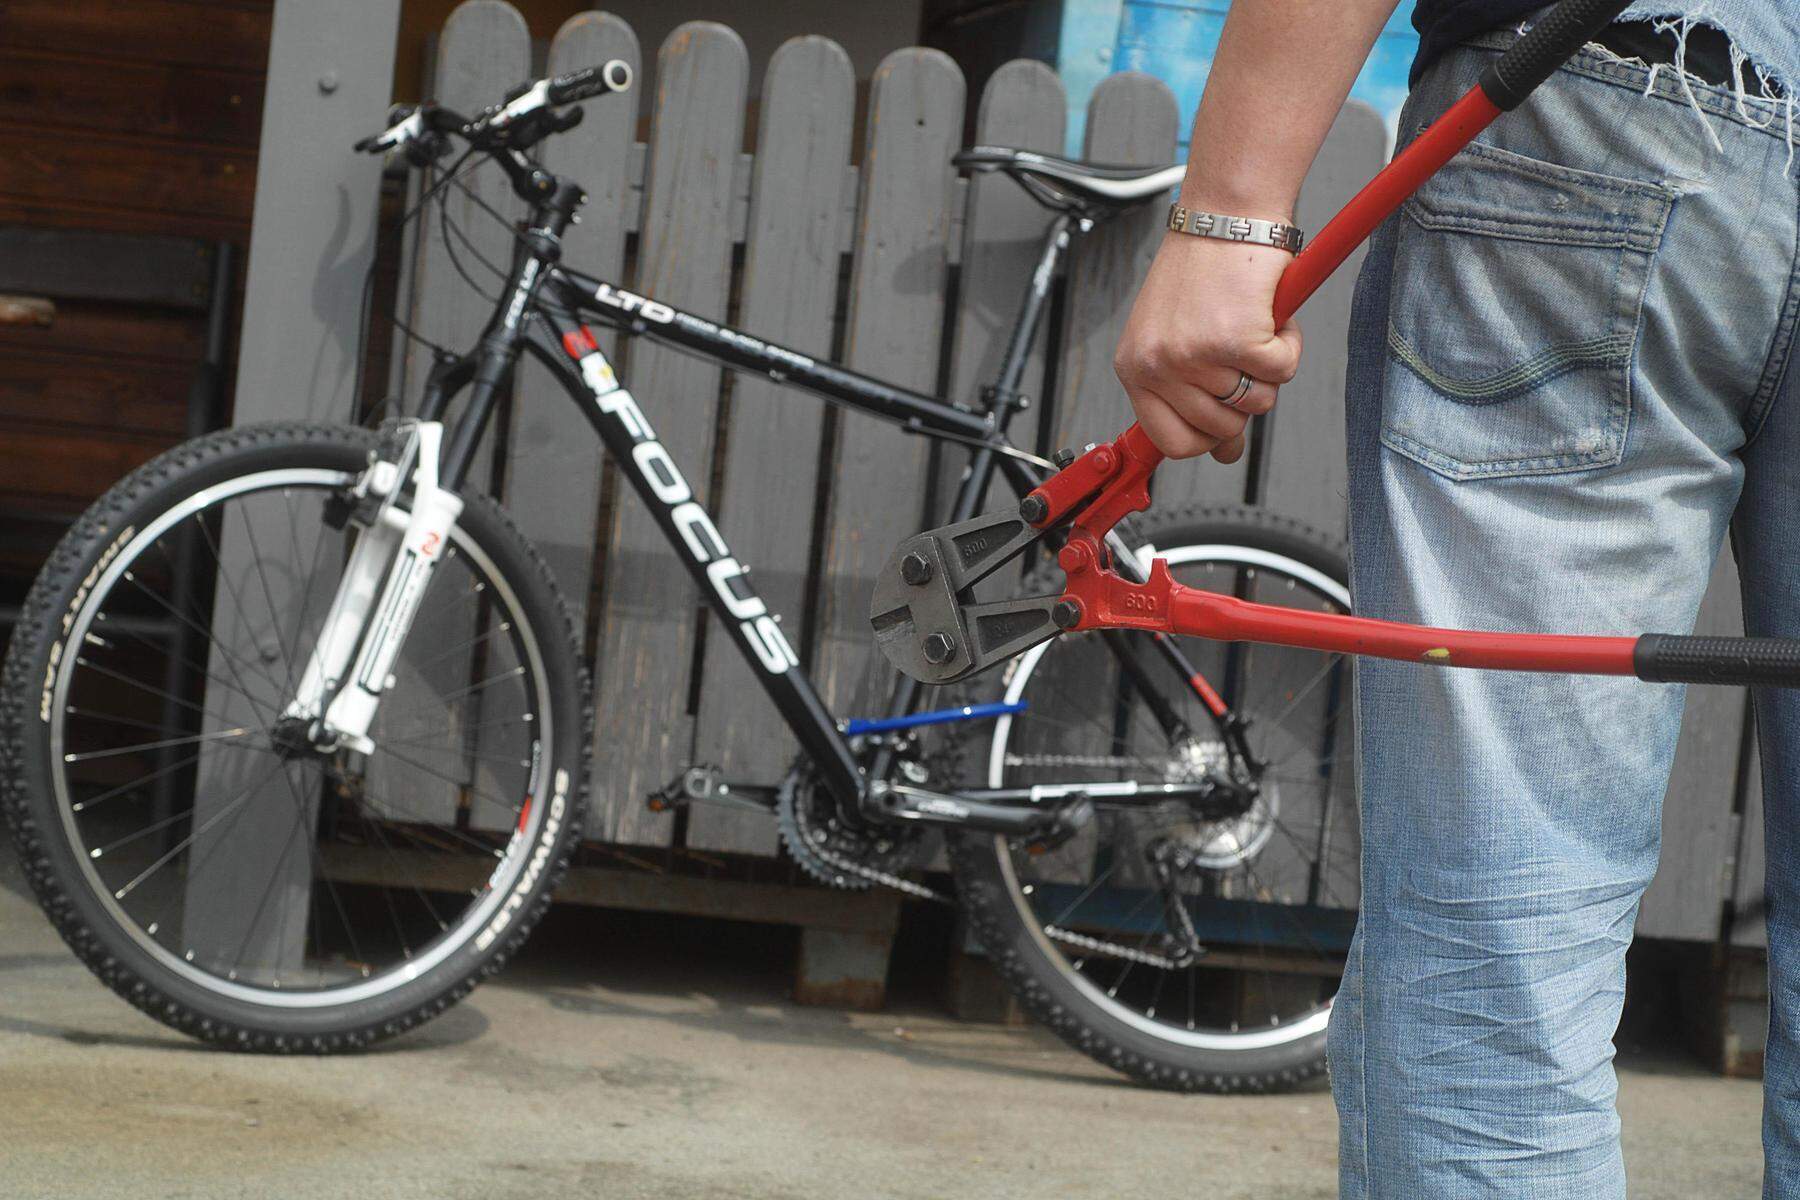 Polizei ermittelt | Wertvolle Fahrräder aus mehreren Kellerabteilen gestohlen